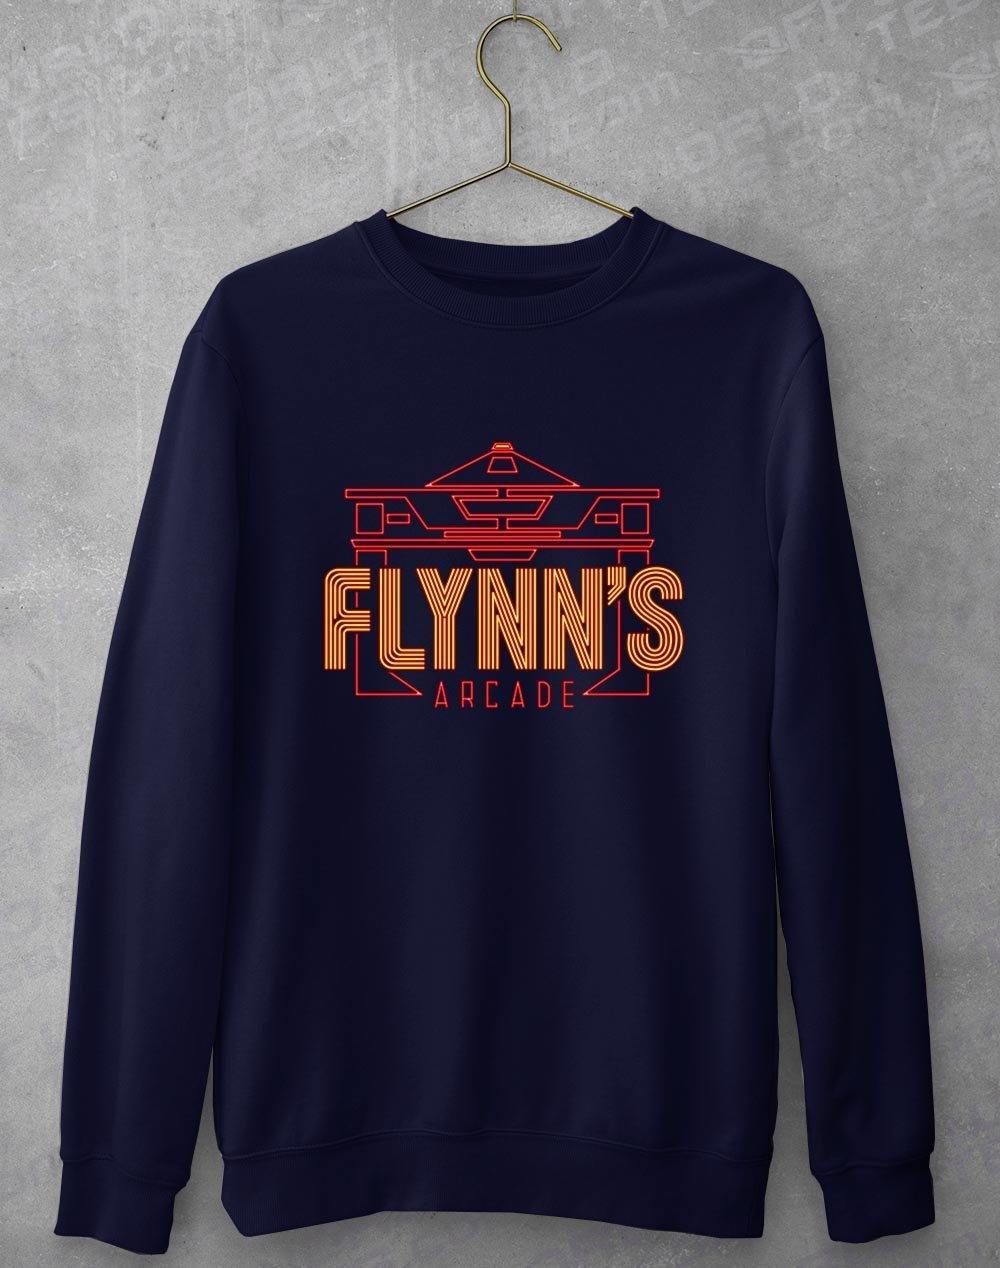 Flynns Arcade Sweatshirt S / Oxford Navy  - Off World Tees